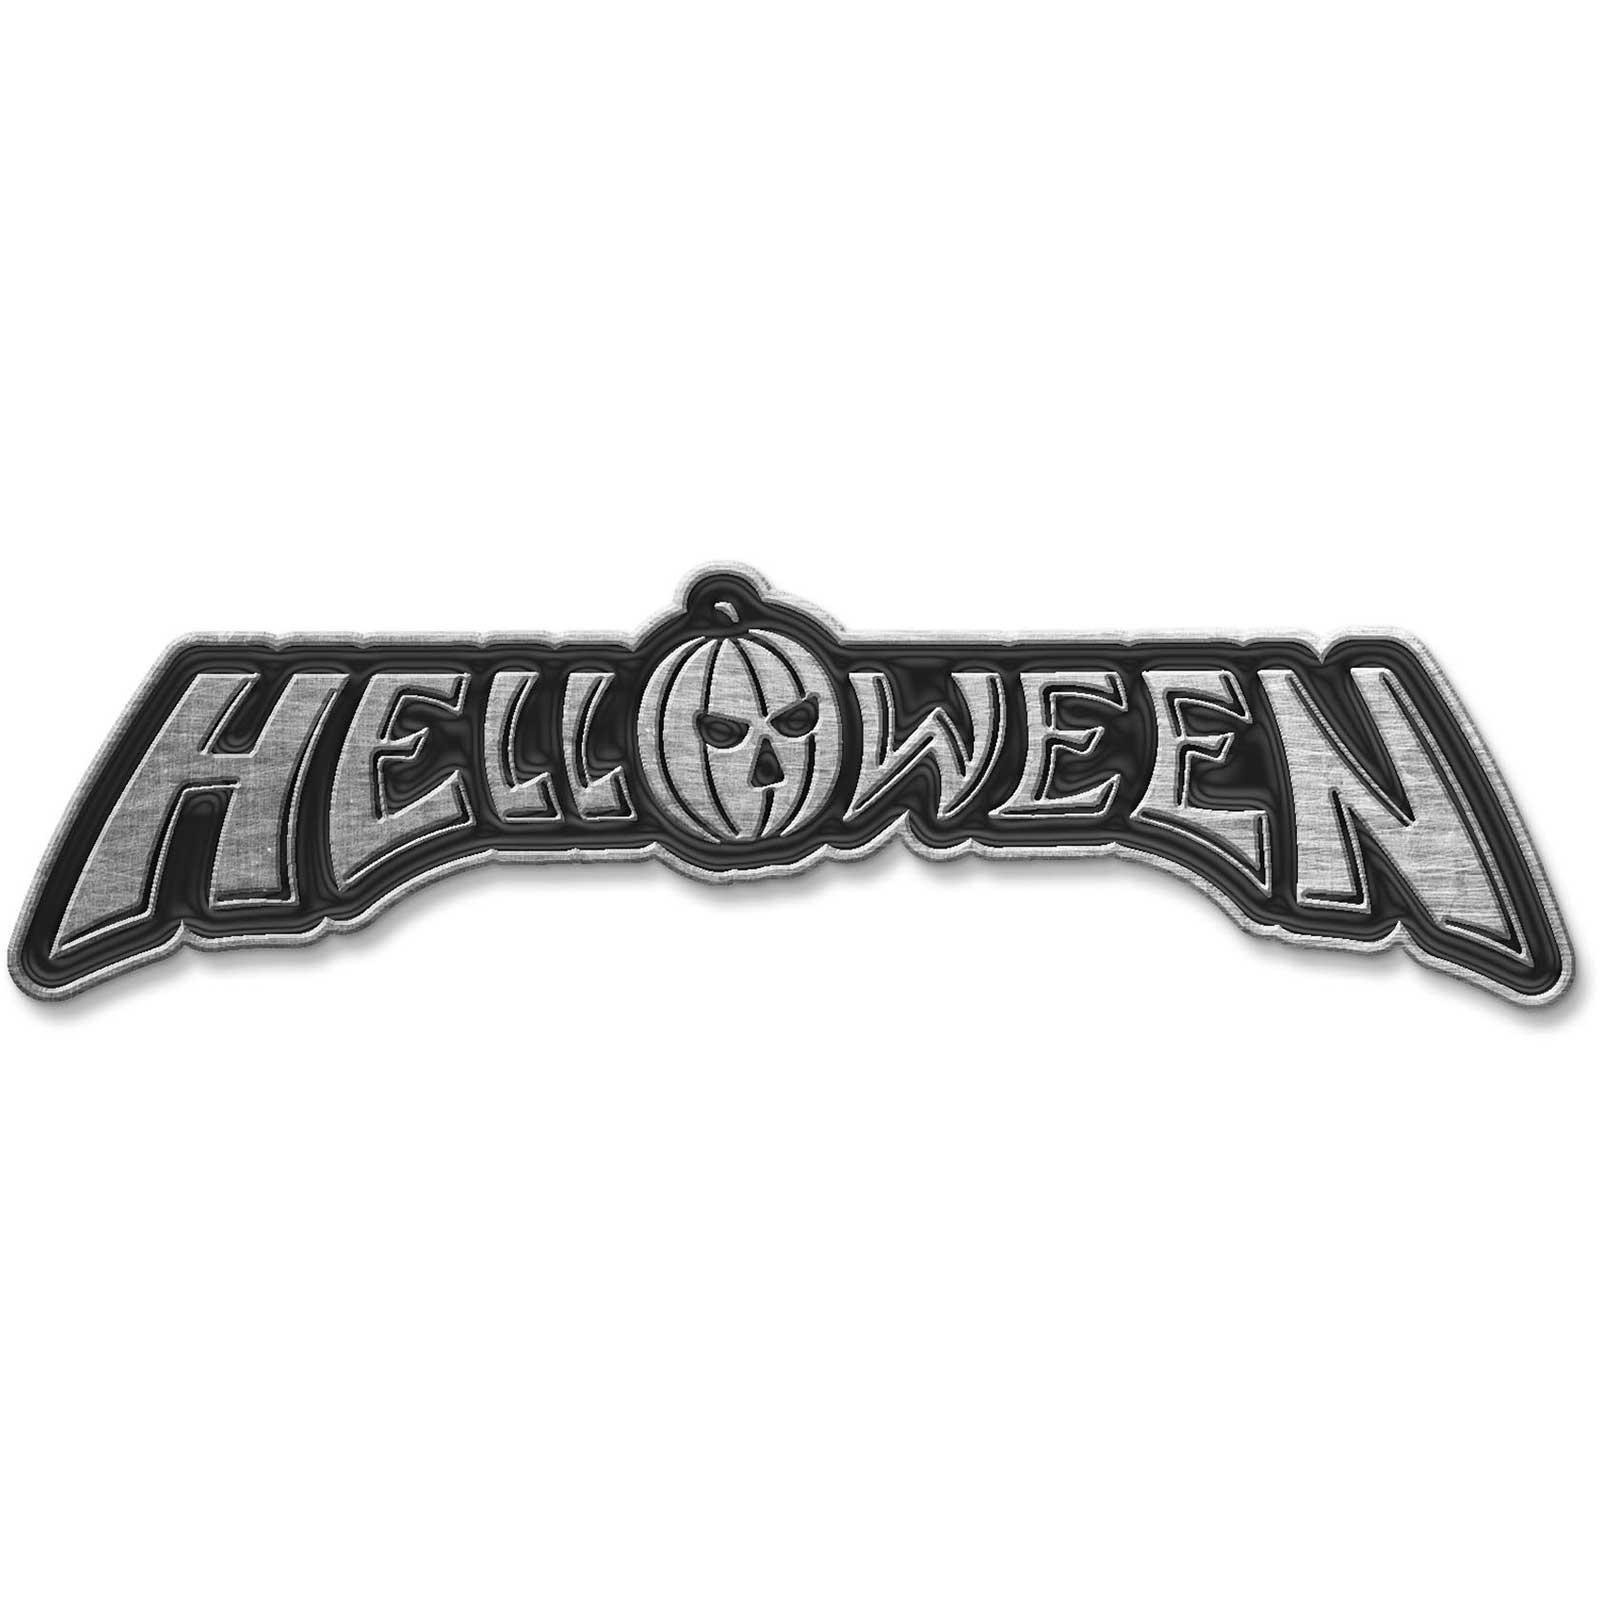 (ハロウィン) Helloween オフィシャル商品 ロゴ エナメル インフィル バッジ 【海外通販】